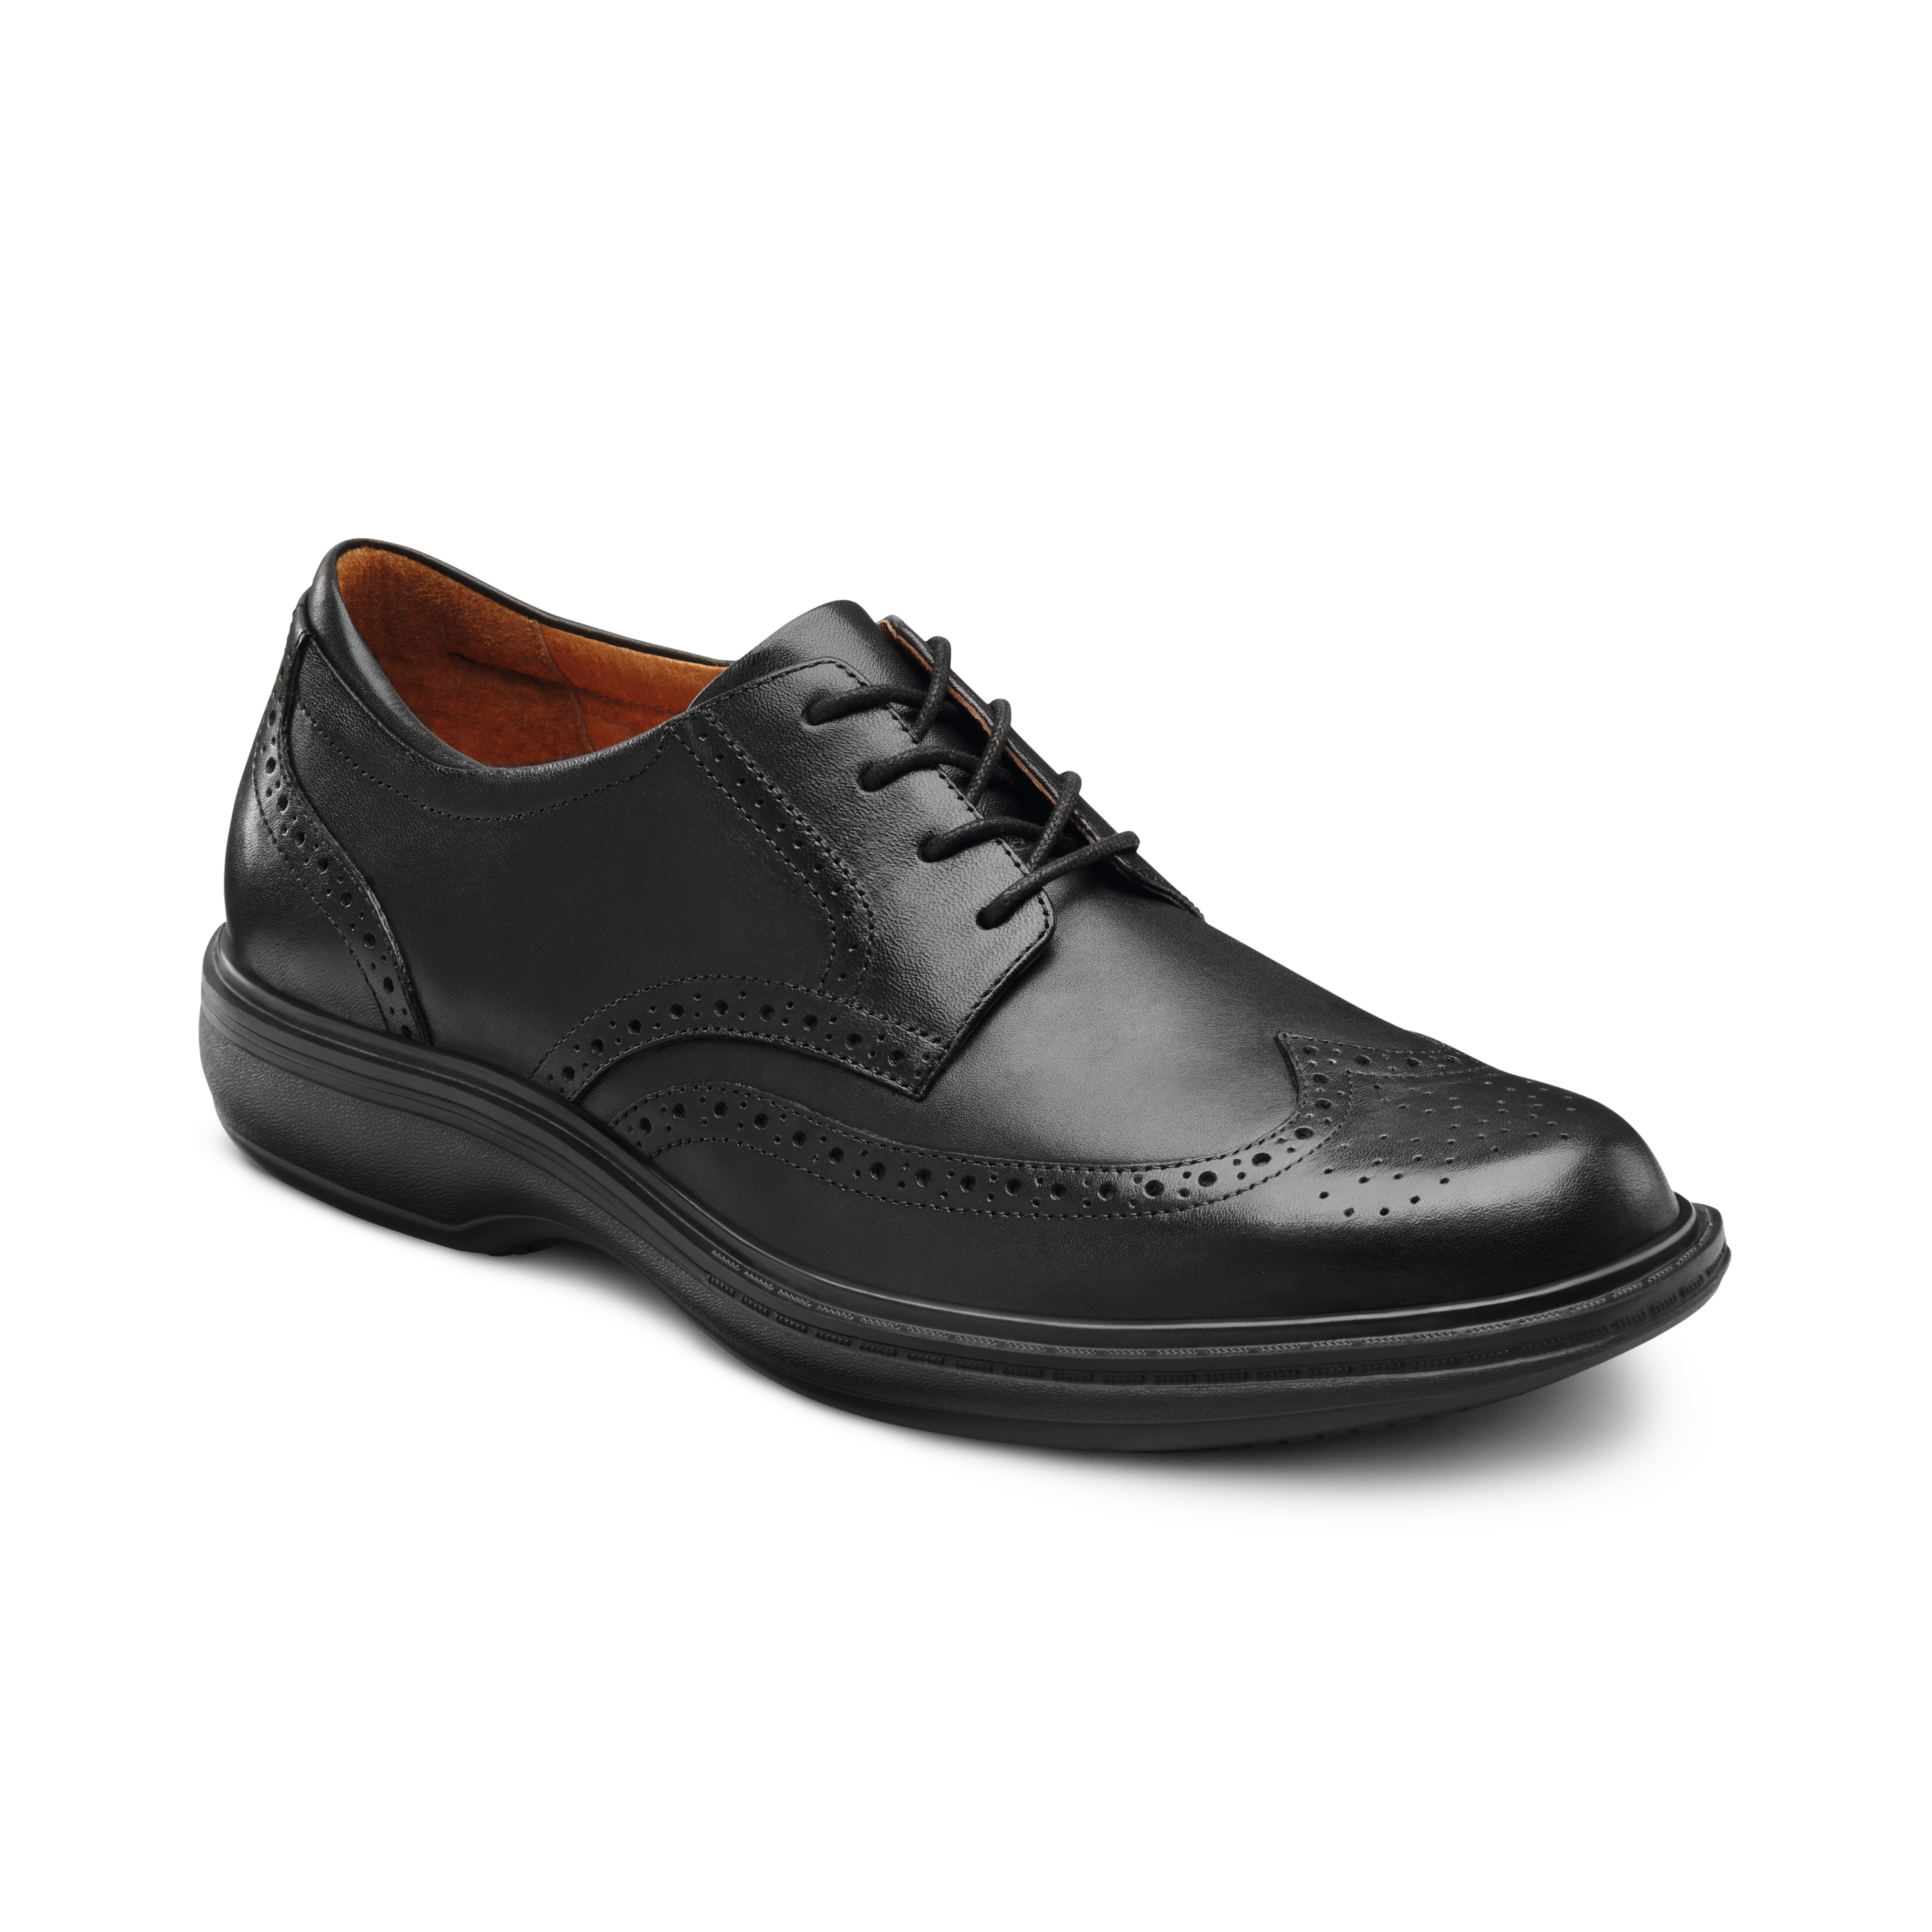 Produktbild DR. COMFORT® Wing schwarz, Orthopädische Schuhe, Zeitloses, klassisches Design. Minimales Gewicht bei maximalem Comfort